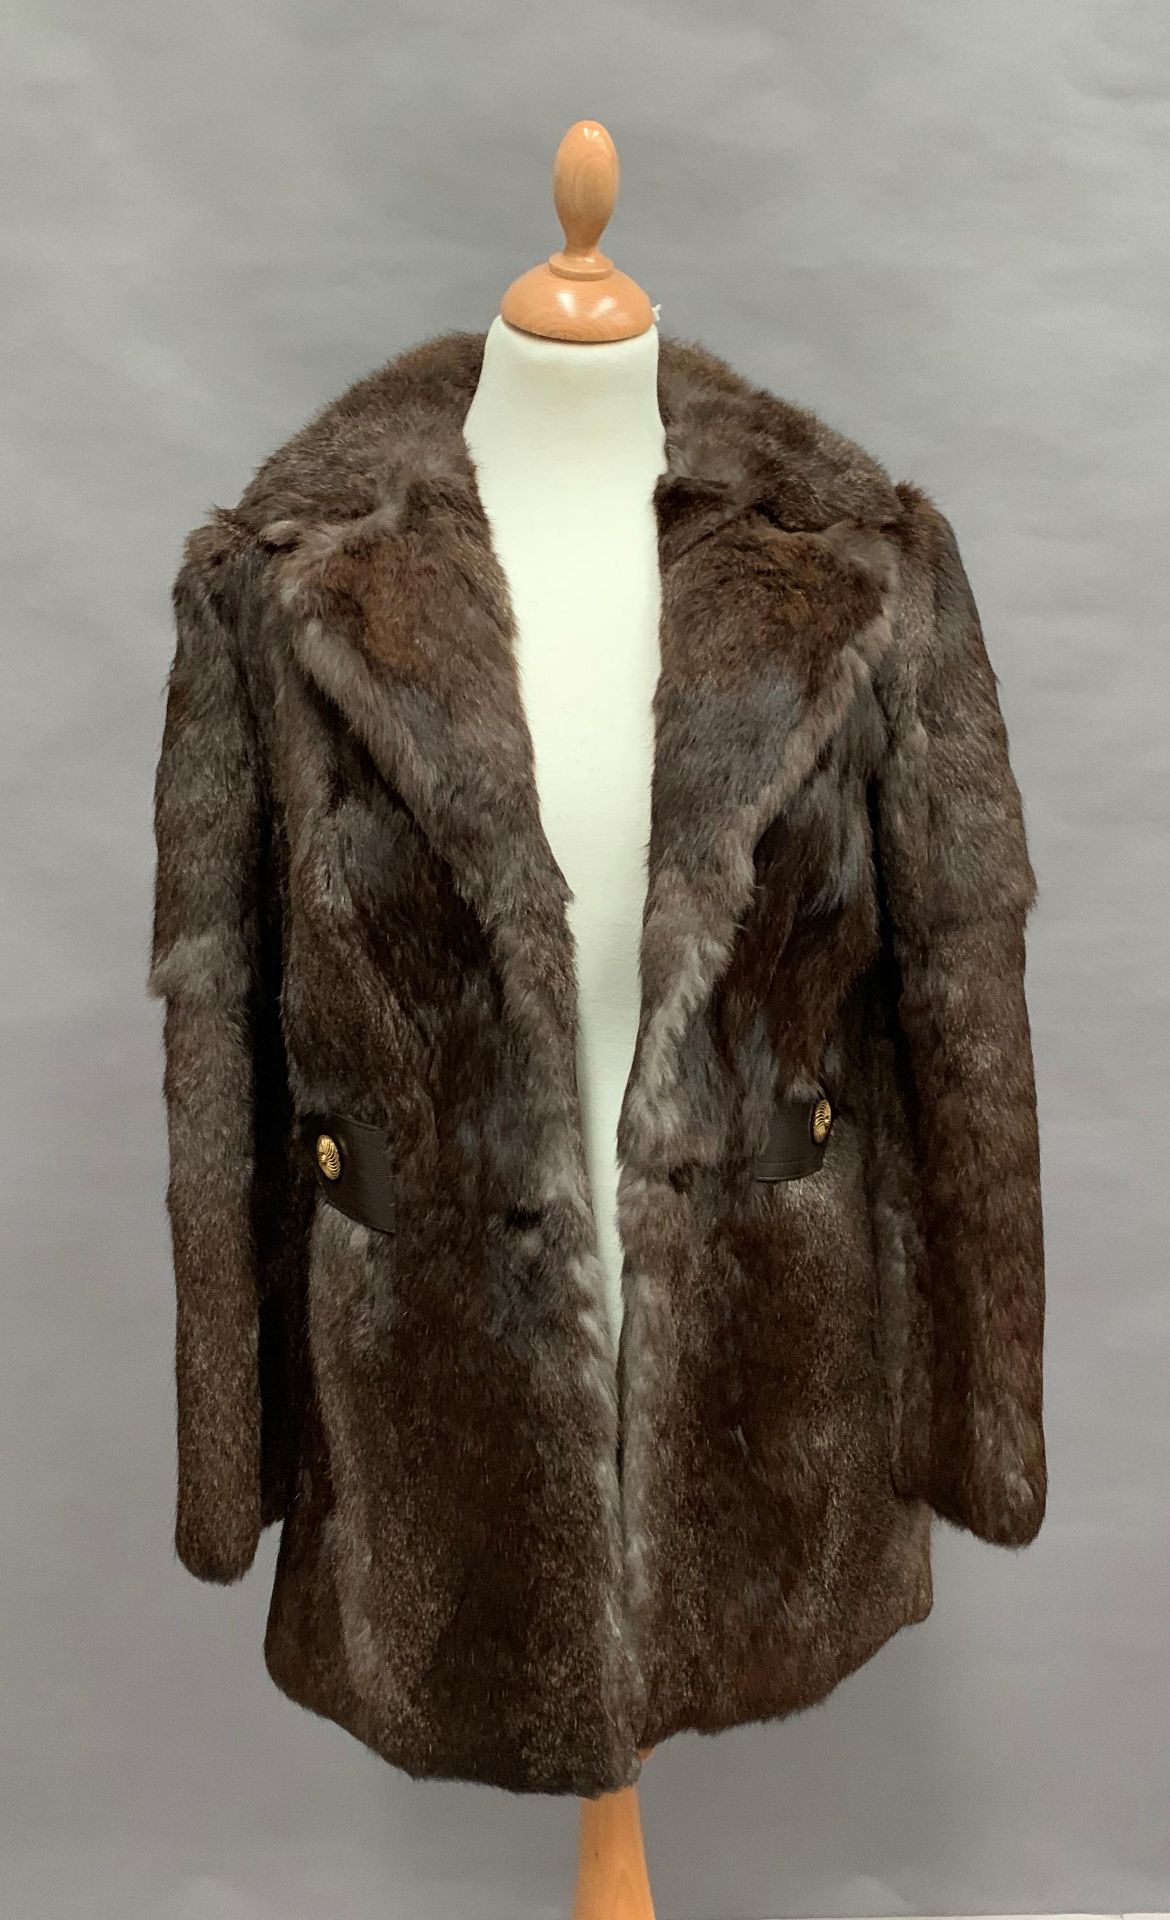 Lady's fur jacket